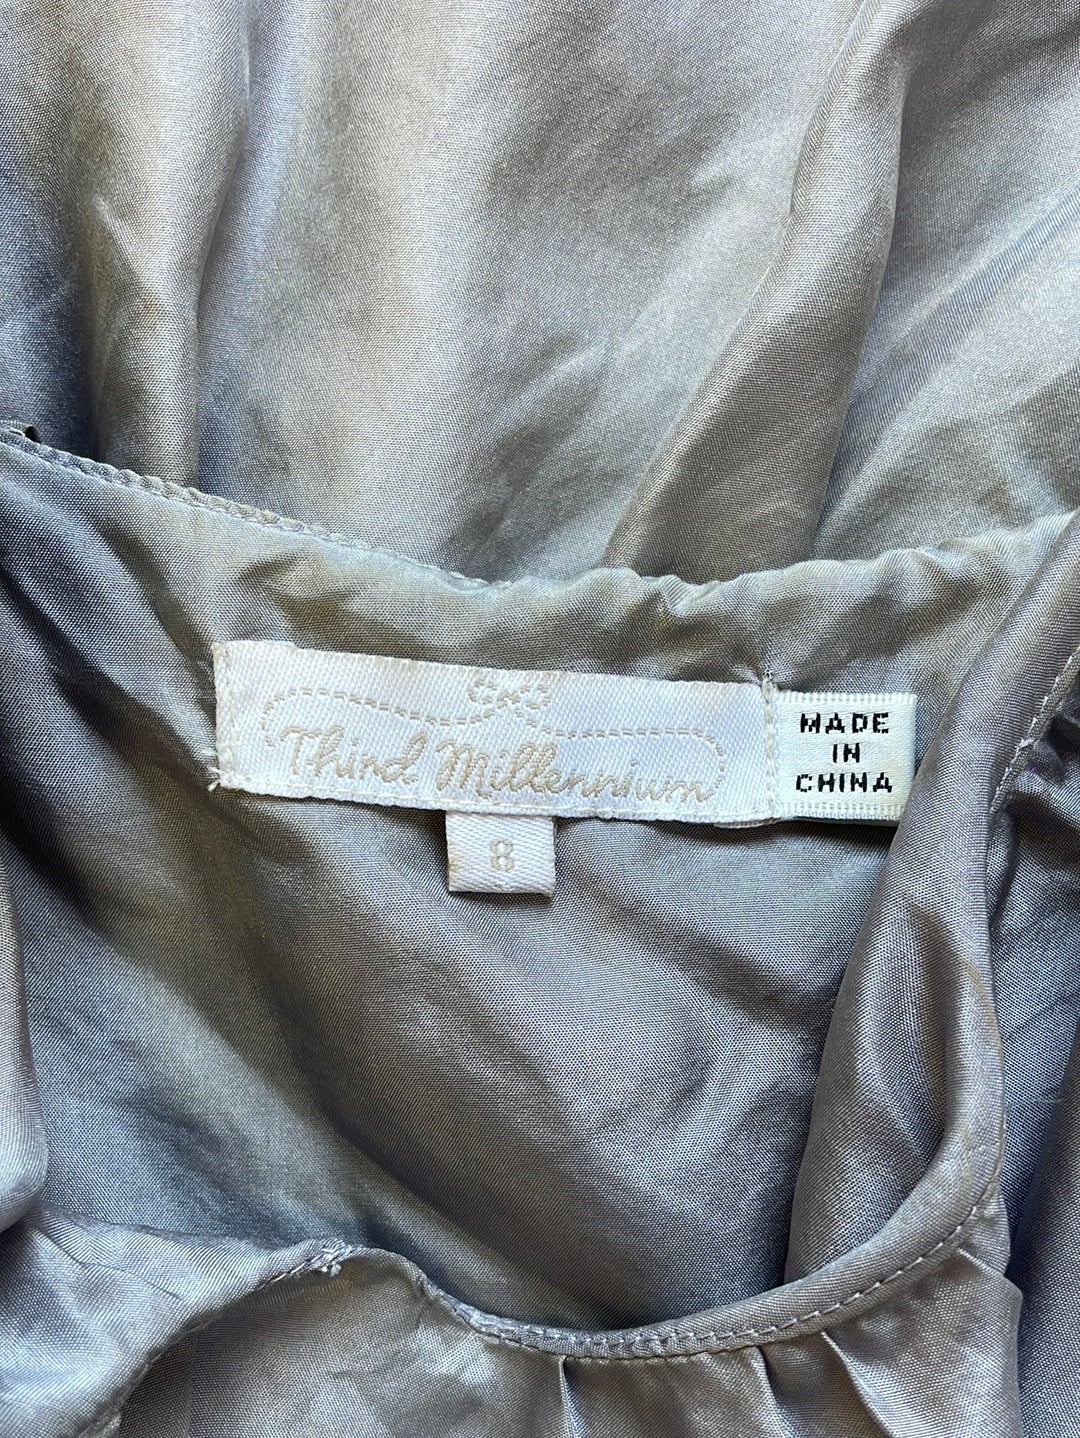 Third Millennium | vintage 90's | top | size 8 | sleeveless | 100% silk